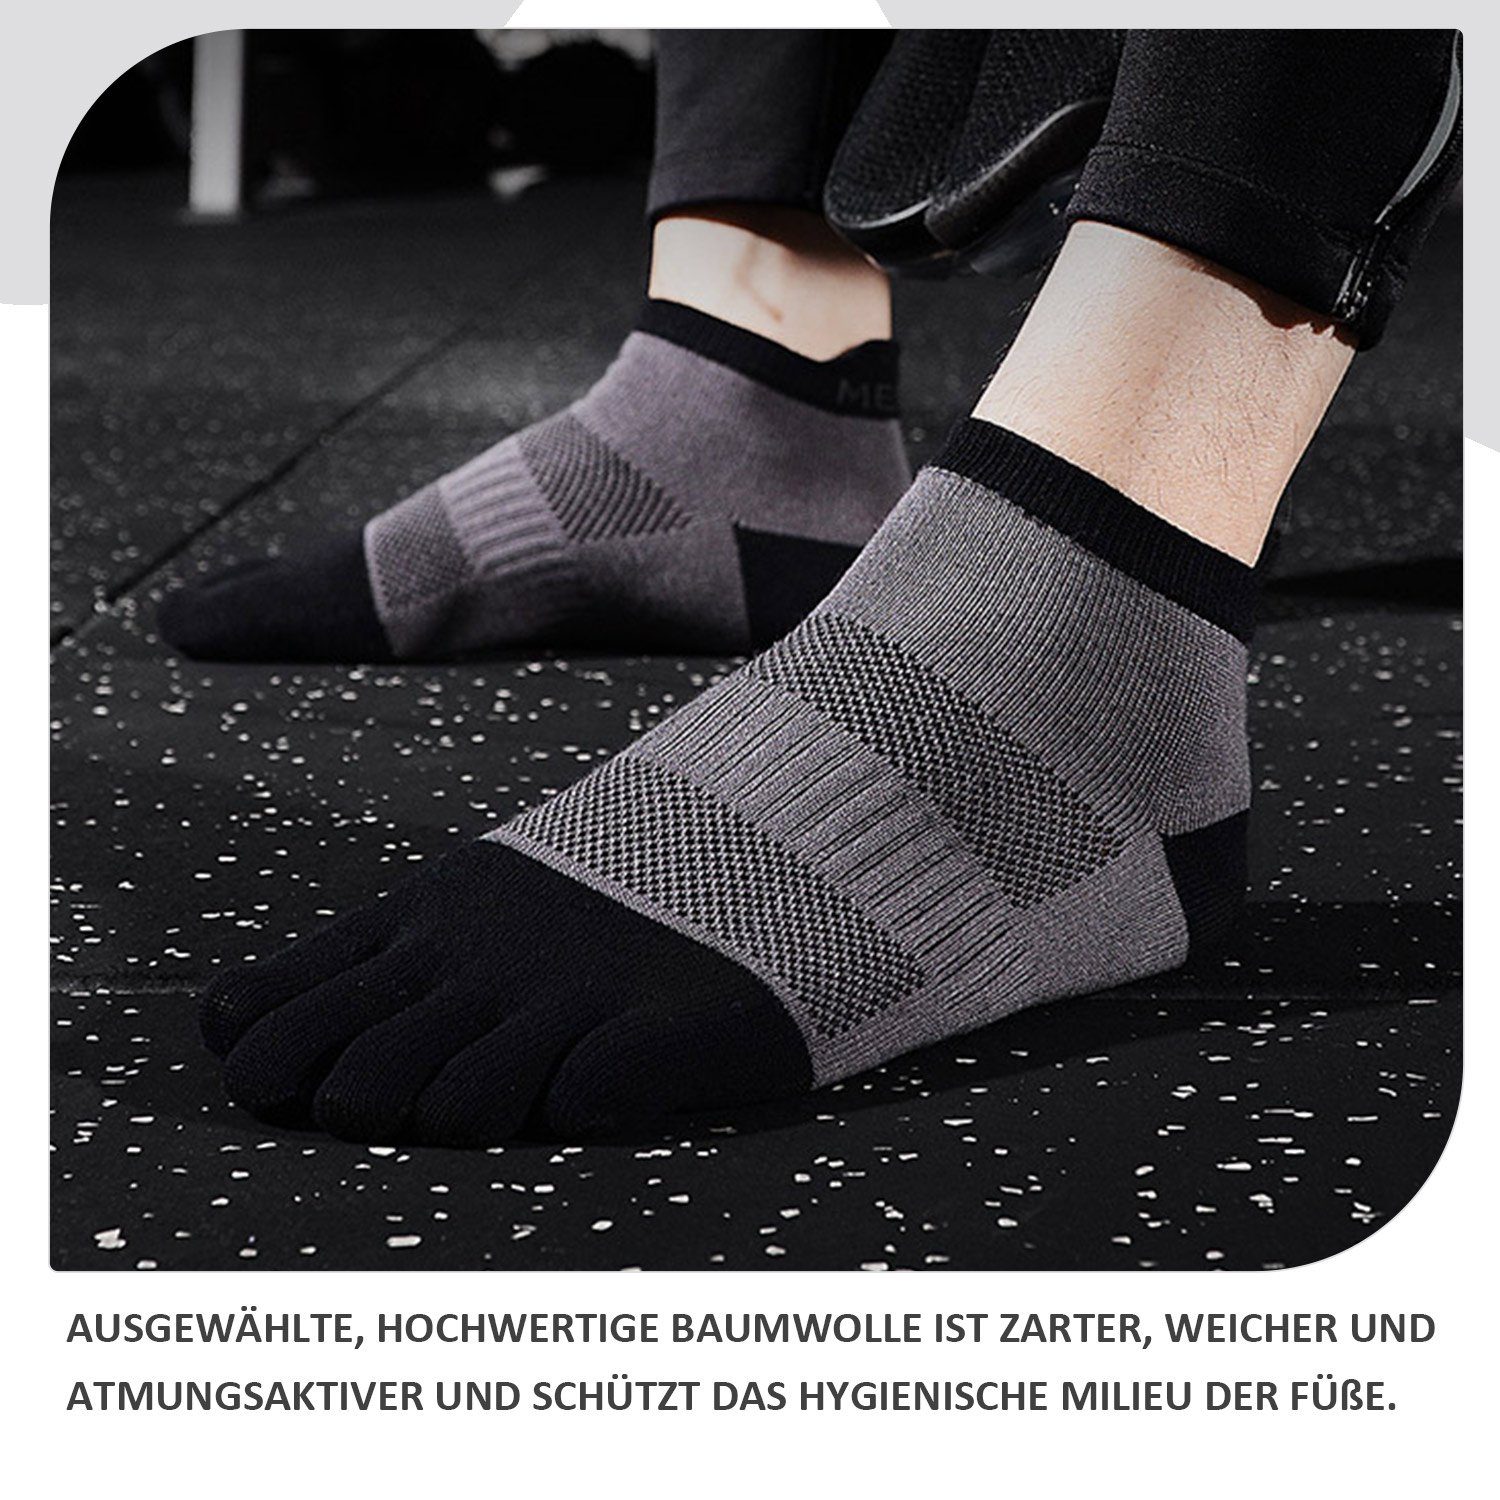 2 Sportsocke Grau zehenfreie Gelb Paare Daisred Socken Zehensocken + Paw 38-43 Toe